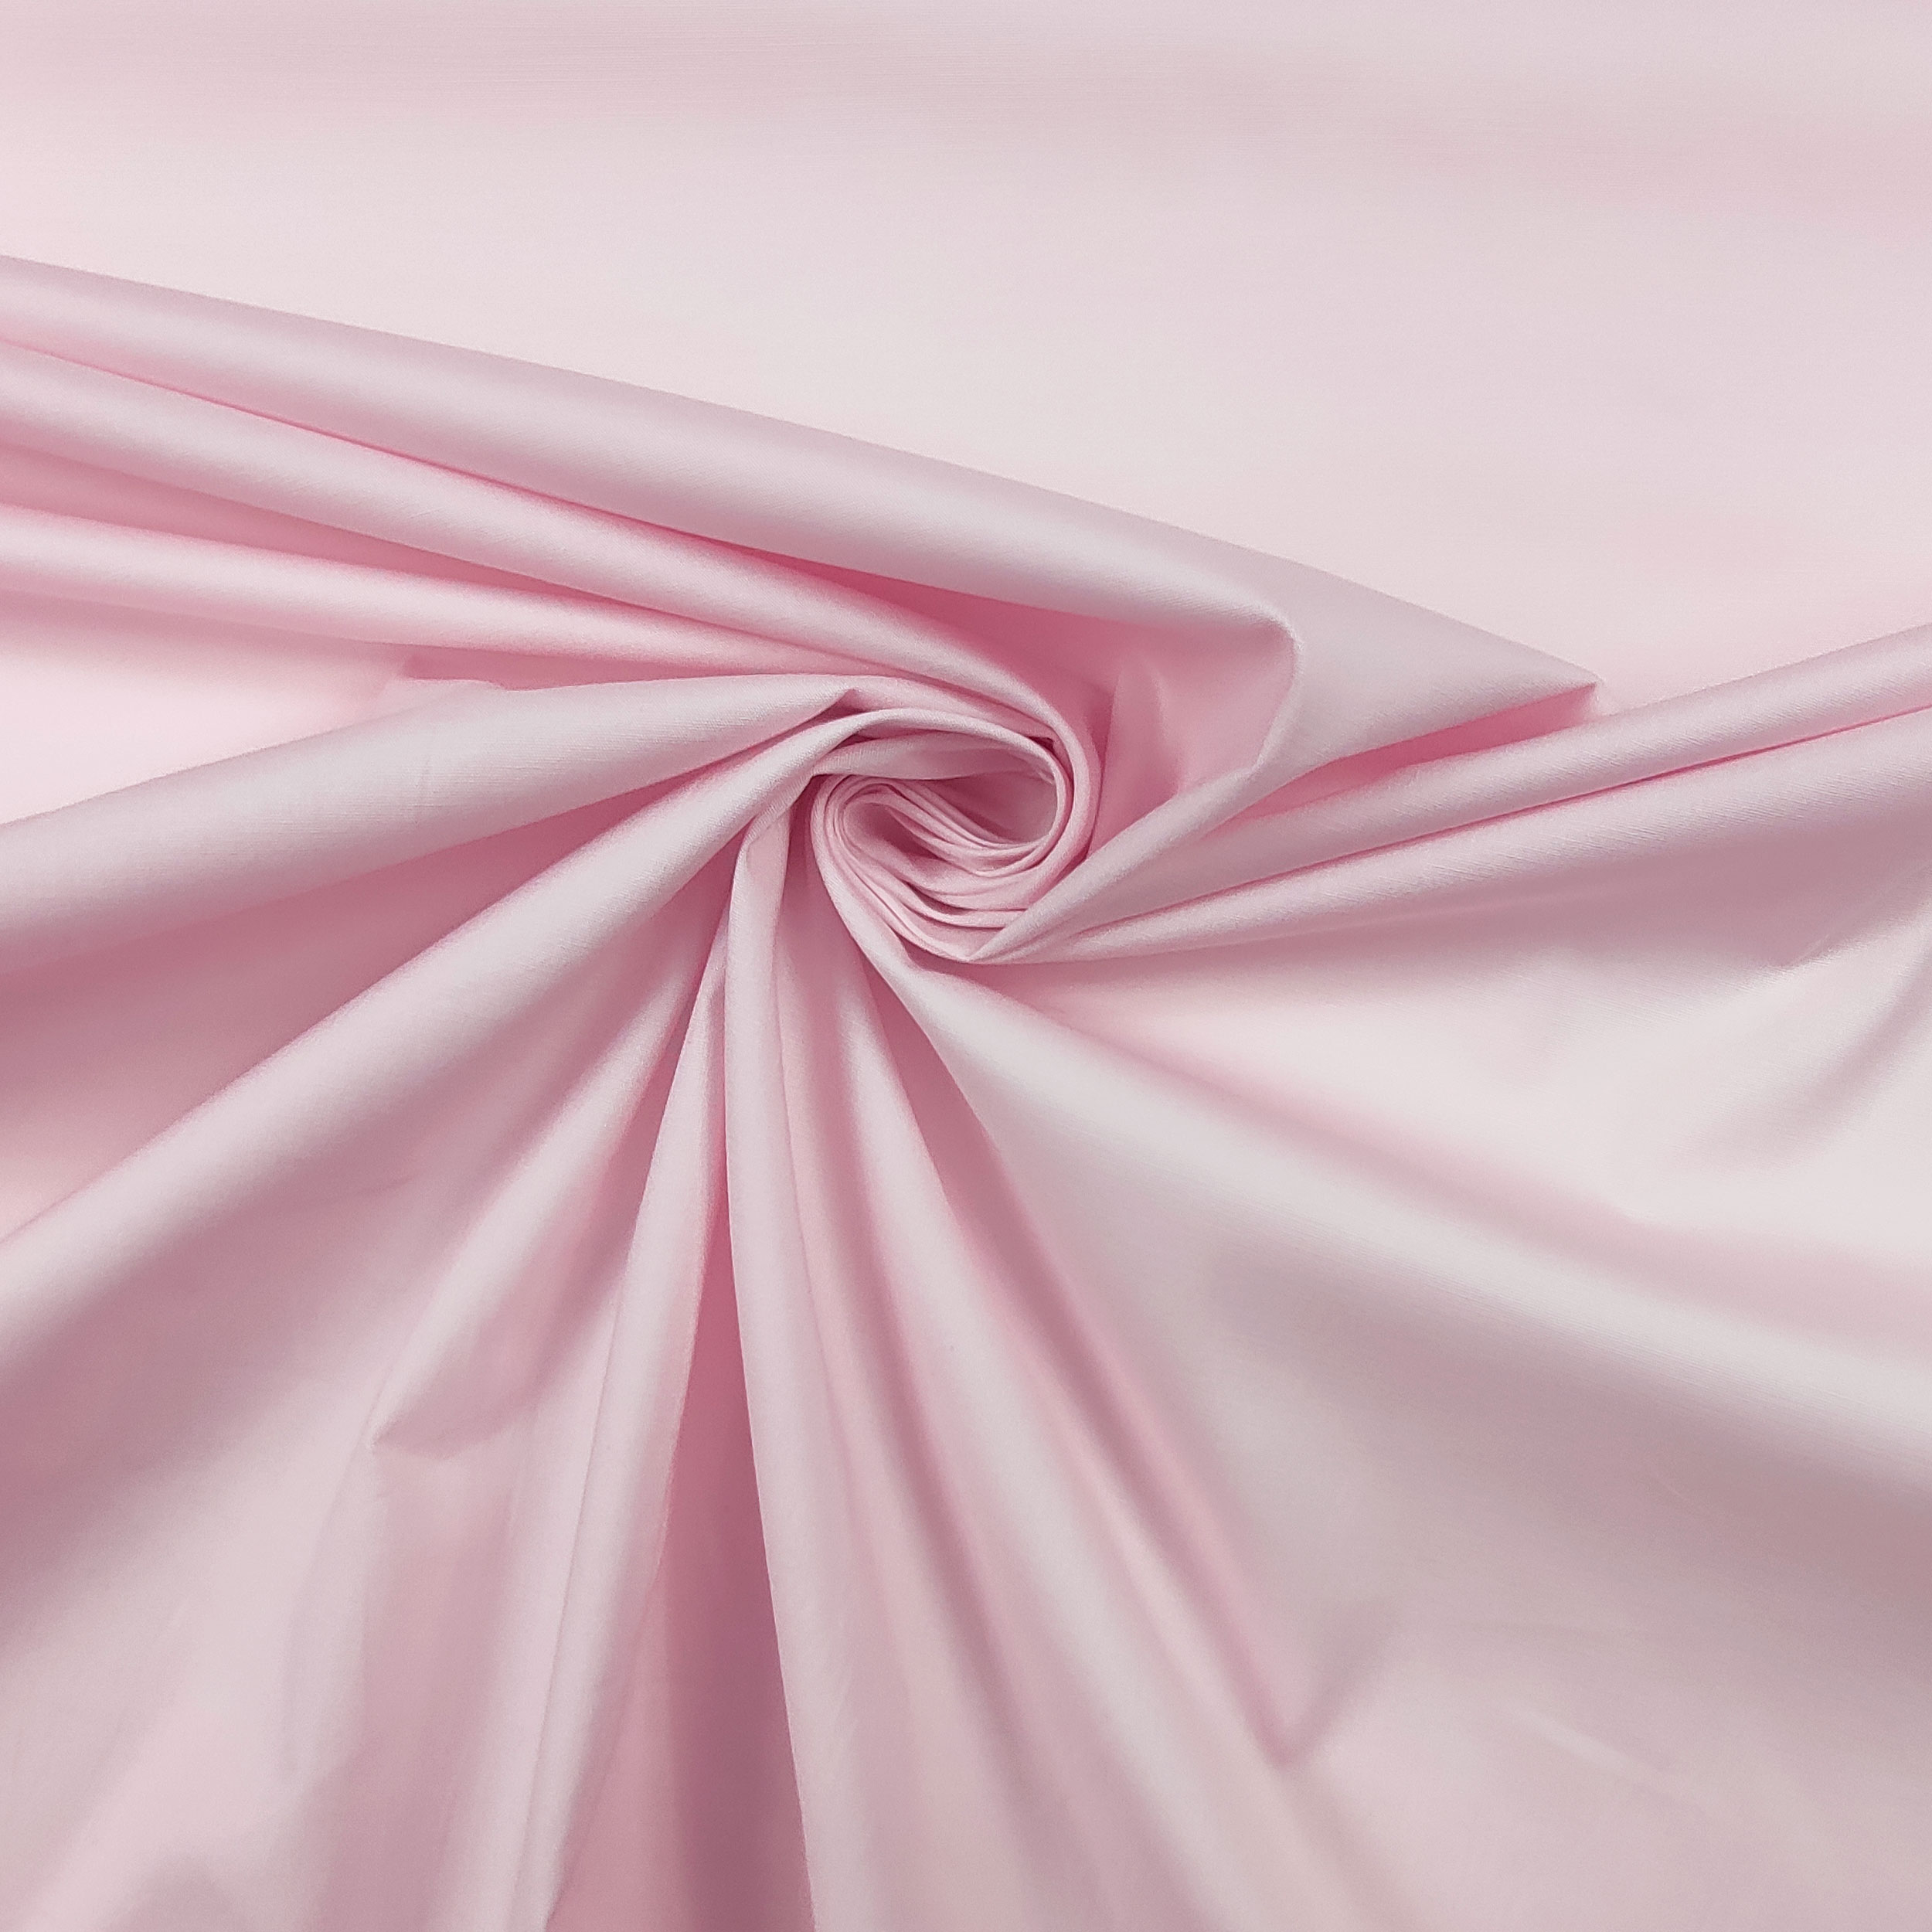 tessuto cotone rosa per abbigliamento